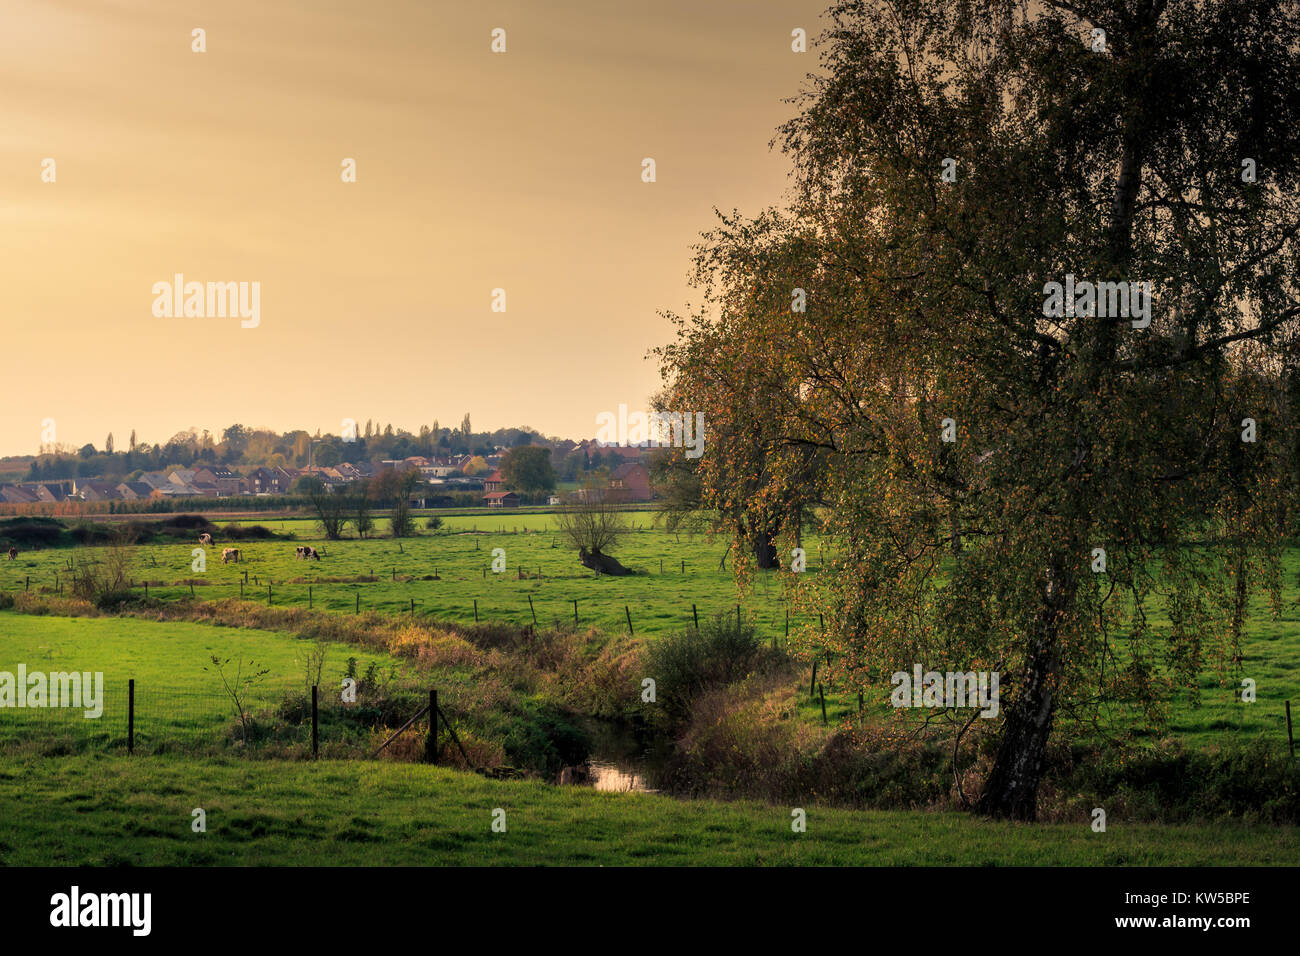 Les prairies avec des vaches, un arbre et une petite rivière (Velpe) à l'automne. Paysage flamand. Kortenaken, Flandre, Belgique, Europe Banque D'Images